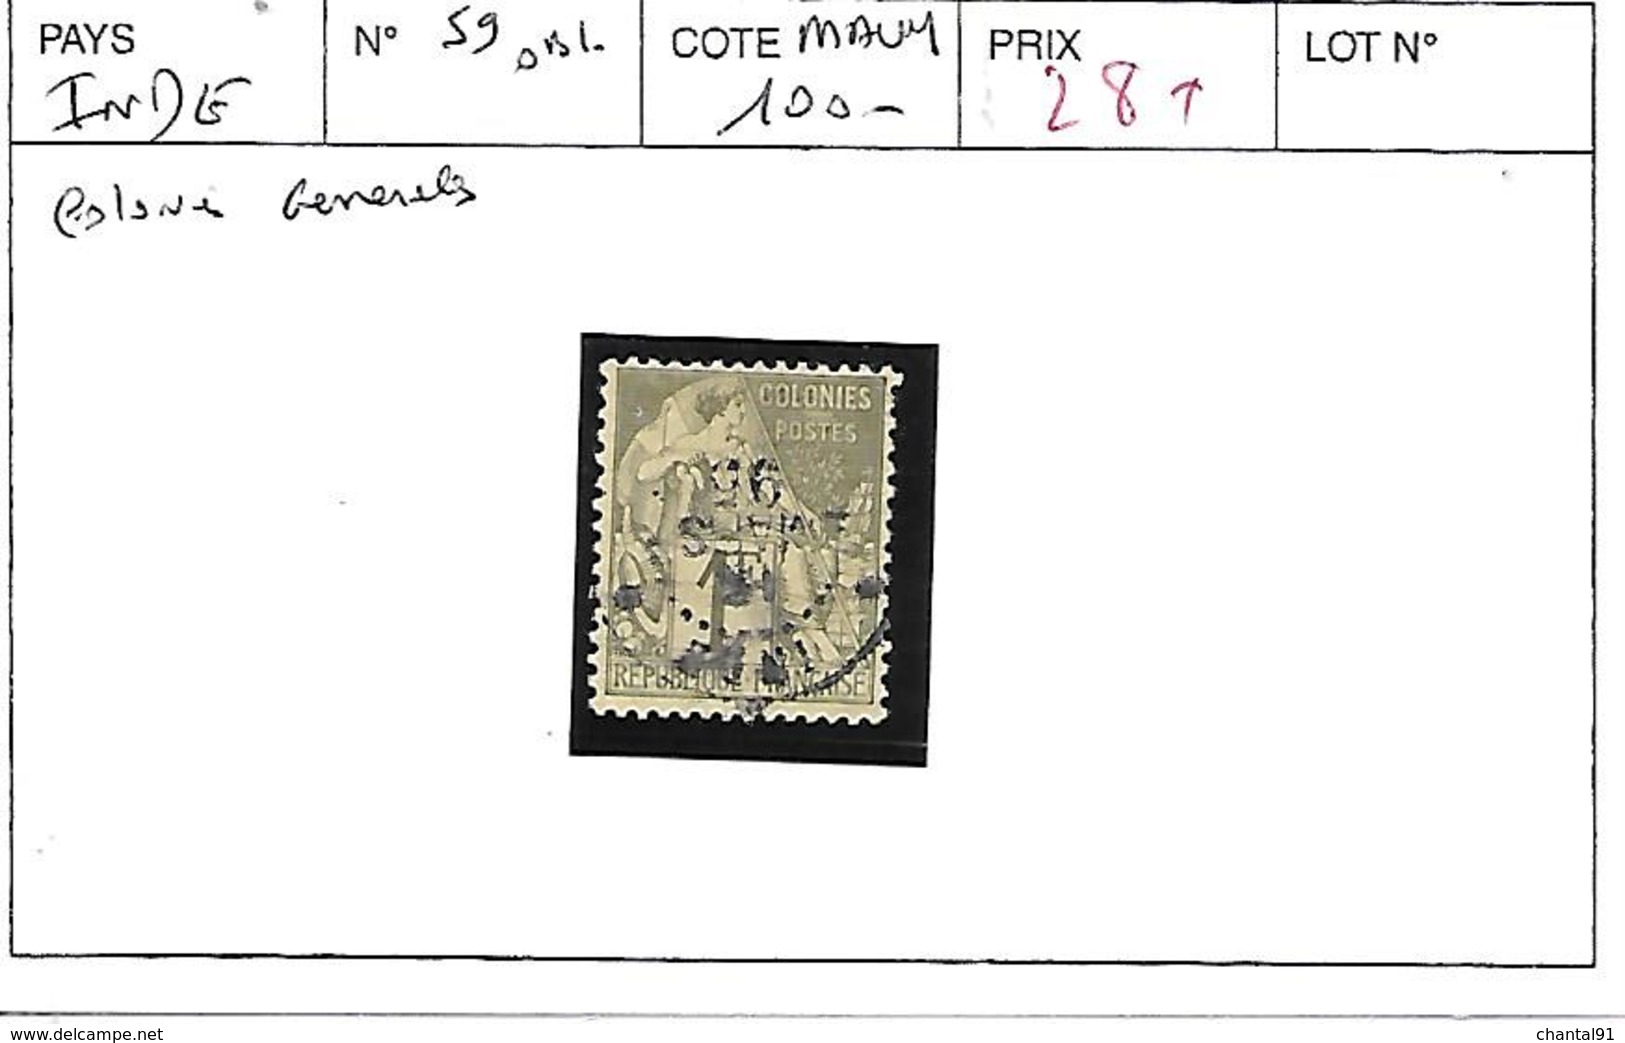 INDE COLONIES GENERALES N° 59 OBL - Used Stamps